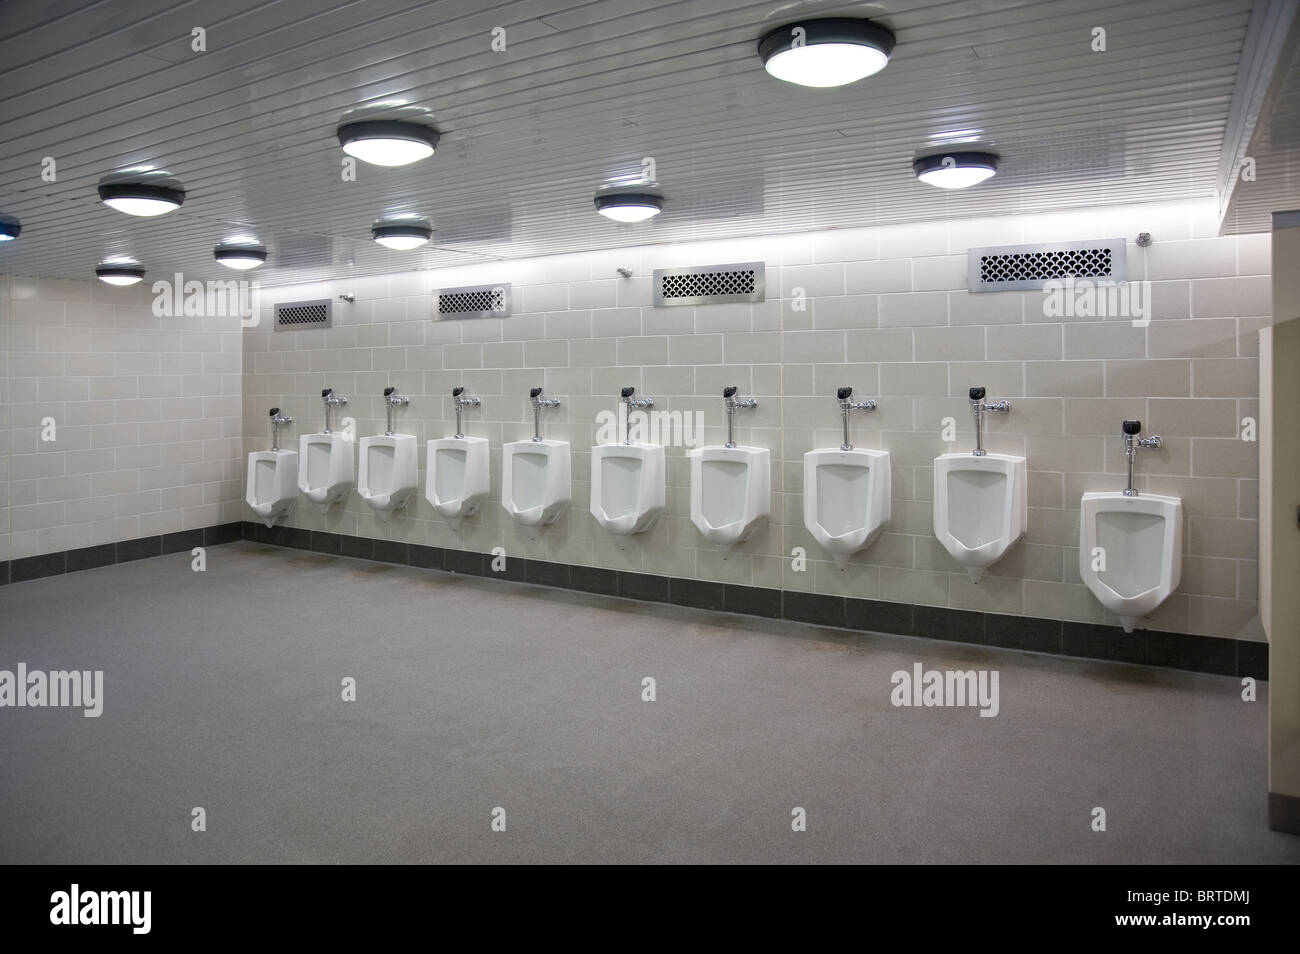 Hombre de baño público con urinarios, Chicago, EE.UU. Foto de stock